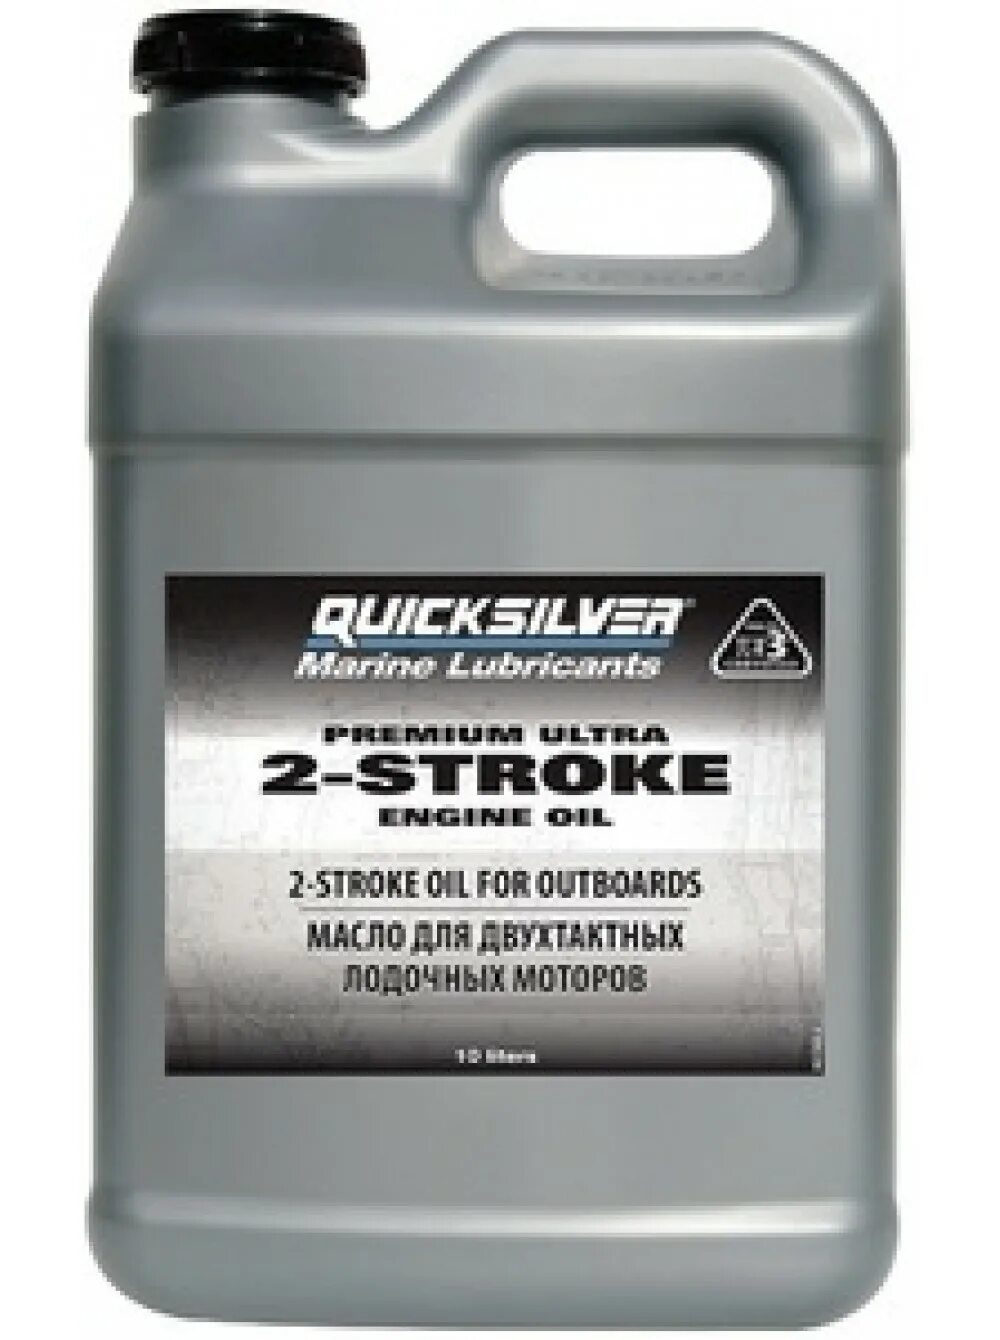 Масло Quicksilver 2-stroke. Quicksilver масло для лодочных моторов 2 тактных. Масло для 2-тактных моторов Quicksilver Premium Ultra TC-w3. Quicksilver Premium Ultra 2-stroke. Двухтактное масло отзывы